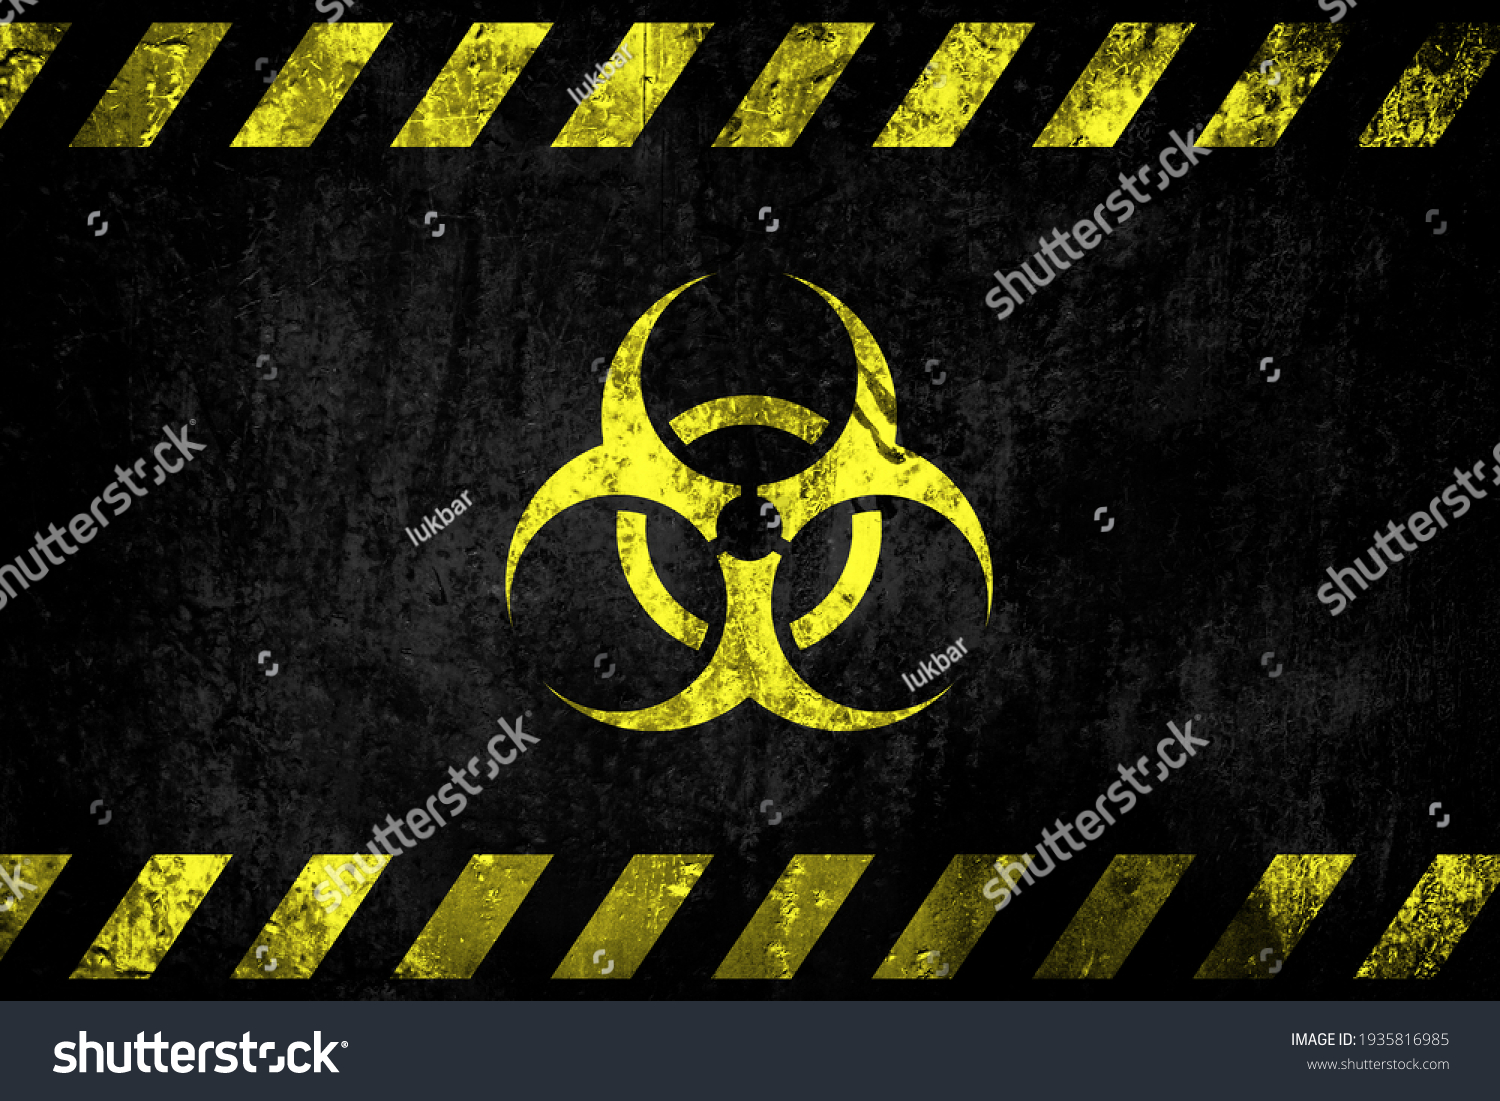 Biohazard contamination symbol, grunge background. Biologic hazard, pathogen, infectious, contamination, pandemic, health risk concept background. #1935816985